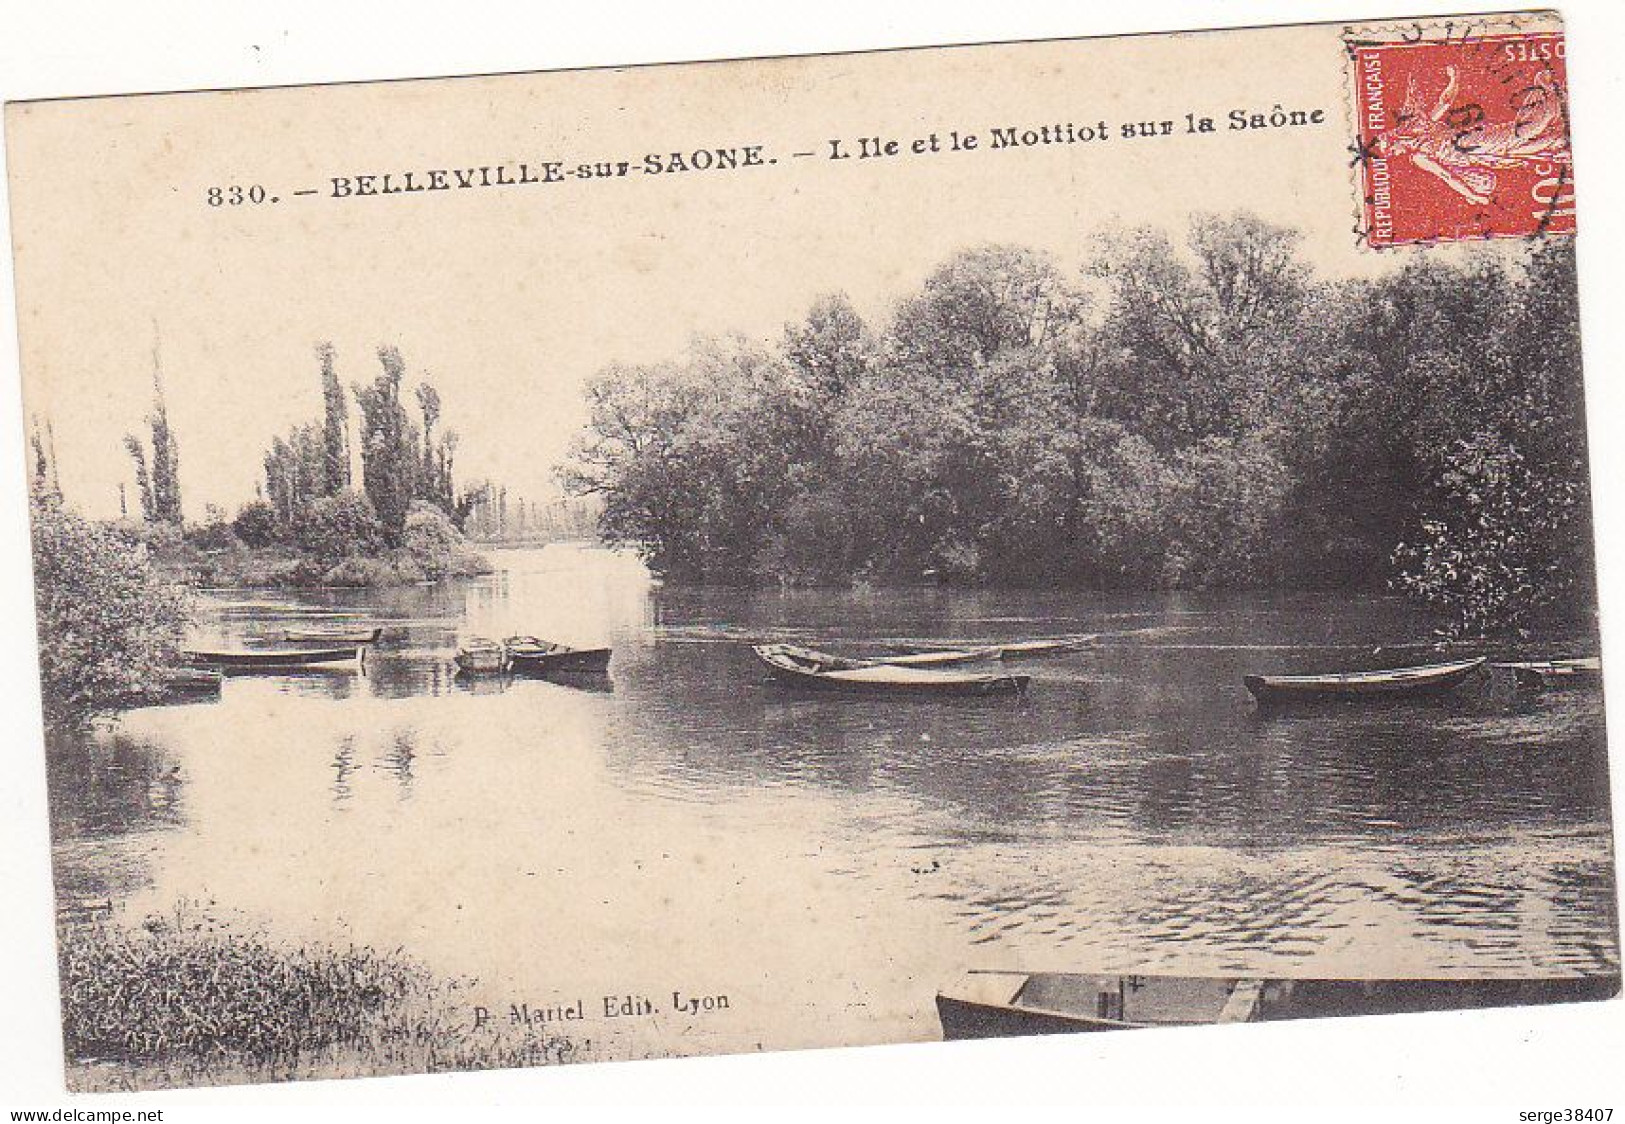 Belleville Sur Saone - 1909 - L'Ile Et Le Mottiot  # 3-19/4 - Belleville Sur Saone